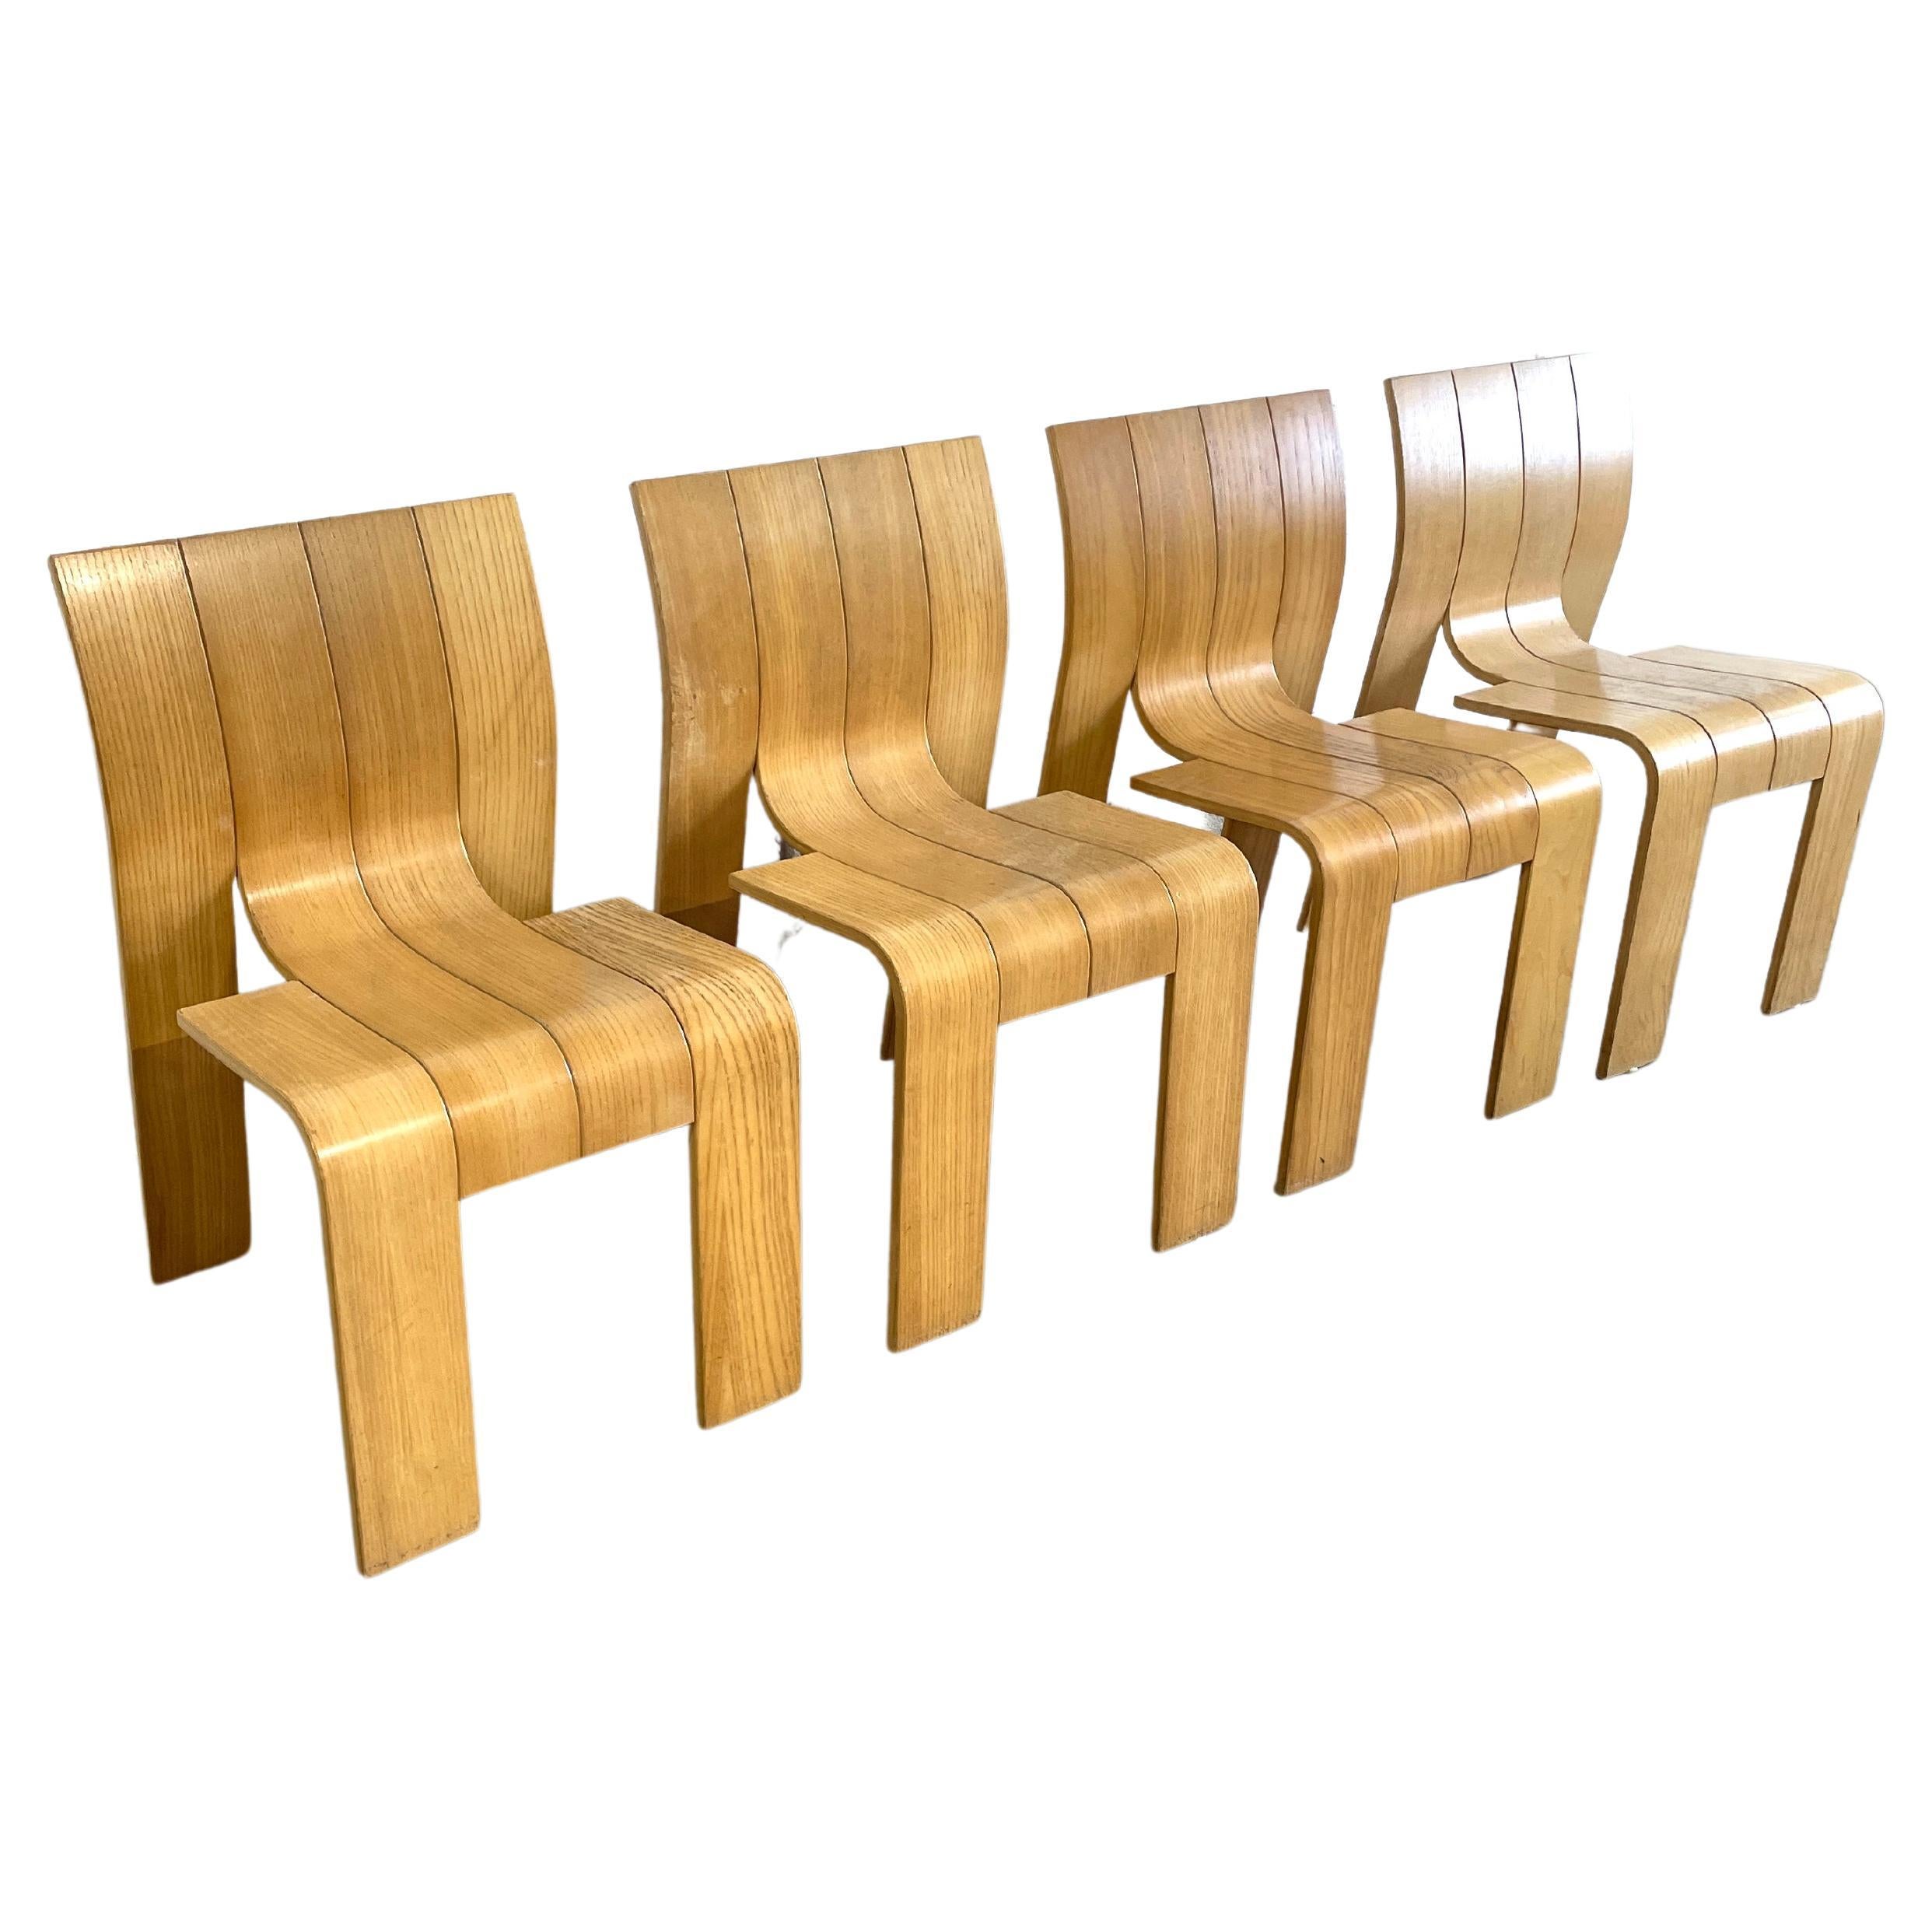 Gijs Bakker for Castelijn “Strip” Dining Chairs Mid Century Modern For Sale